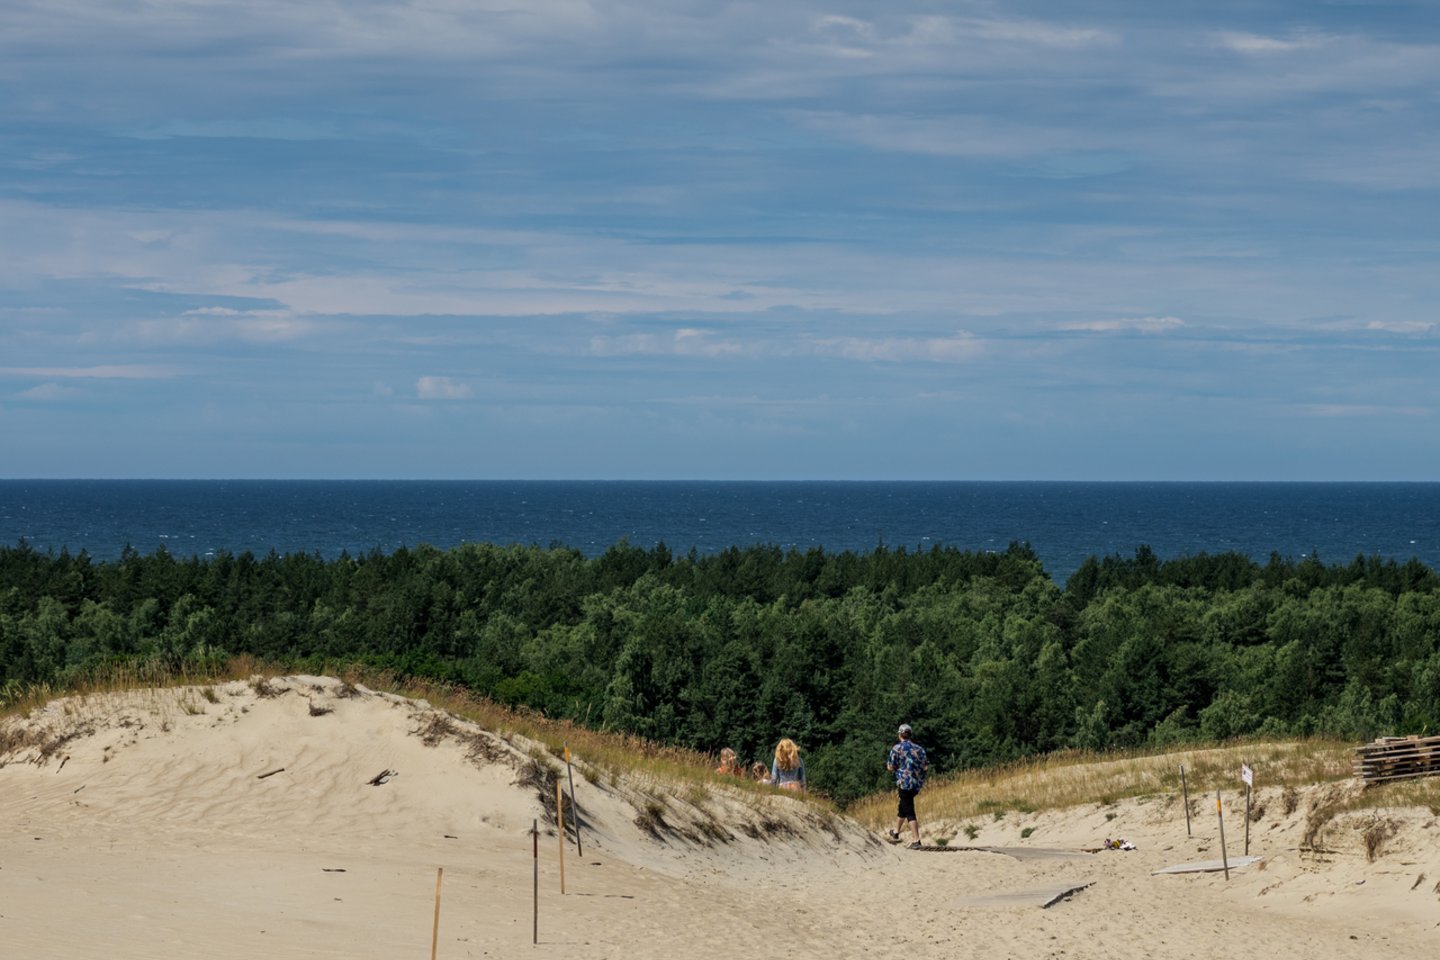 Gamtos perlais bei įspūdingais miškais garsėjanti Lietuva susilaukė ir dar vieno įvertinimo – žiniasklaidos gigantas CNN paskelbė 20 geriausių nudistų paplūdimių sąrašą, o į jį pateko ir Nidos nudistų pliažas.<br>V.Ščiavinsko nuotr.